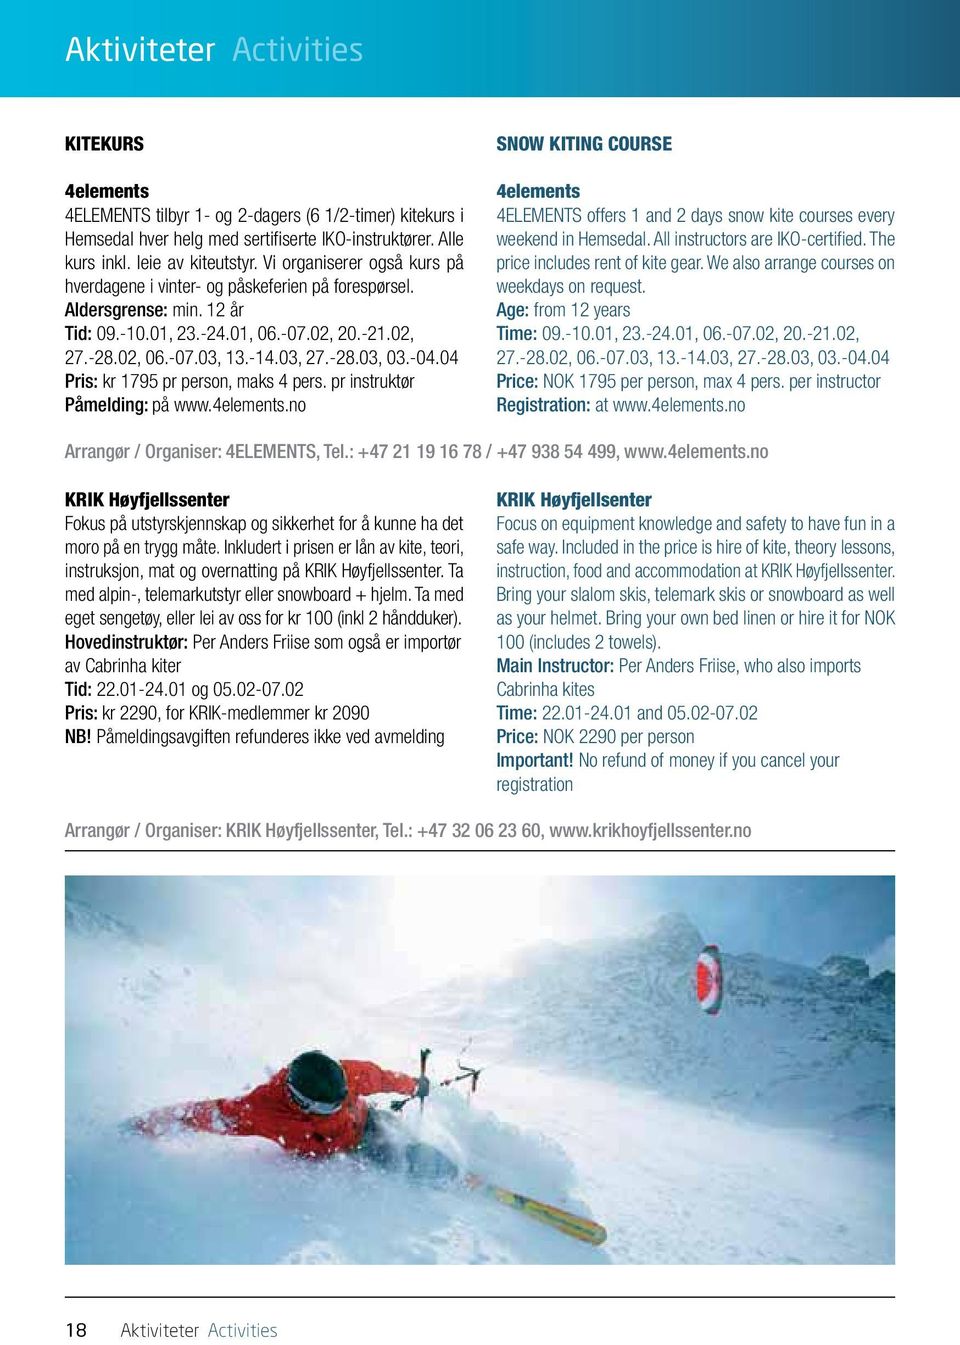 -04.04 Pris: kr 1795 pr person, maks 4 pers. pr instruktør Påmelding: på www.4elements.no SNOW KITING COURSE 4elements 4ELEMENTS offers 1 and 2 days snow kite courses every weekend in Hemsedal.